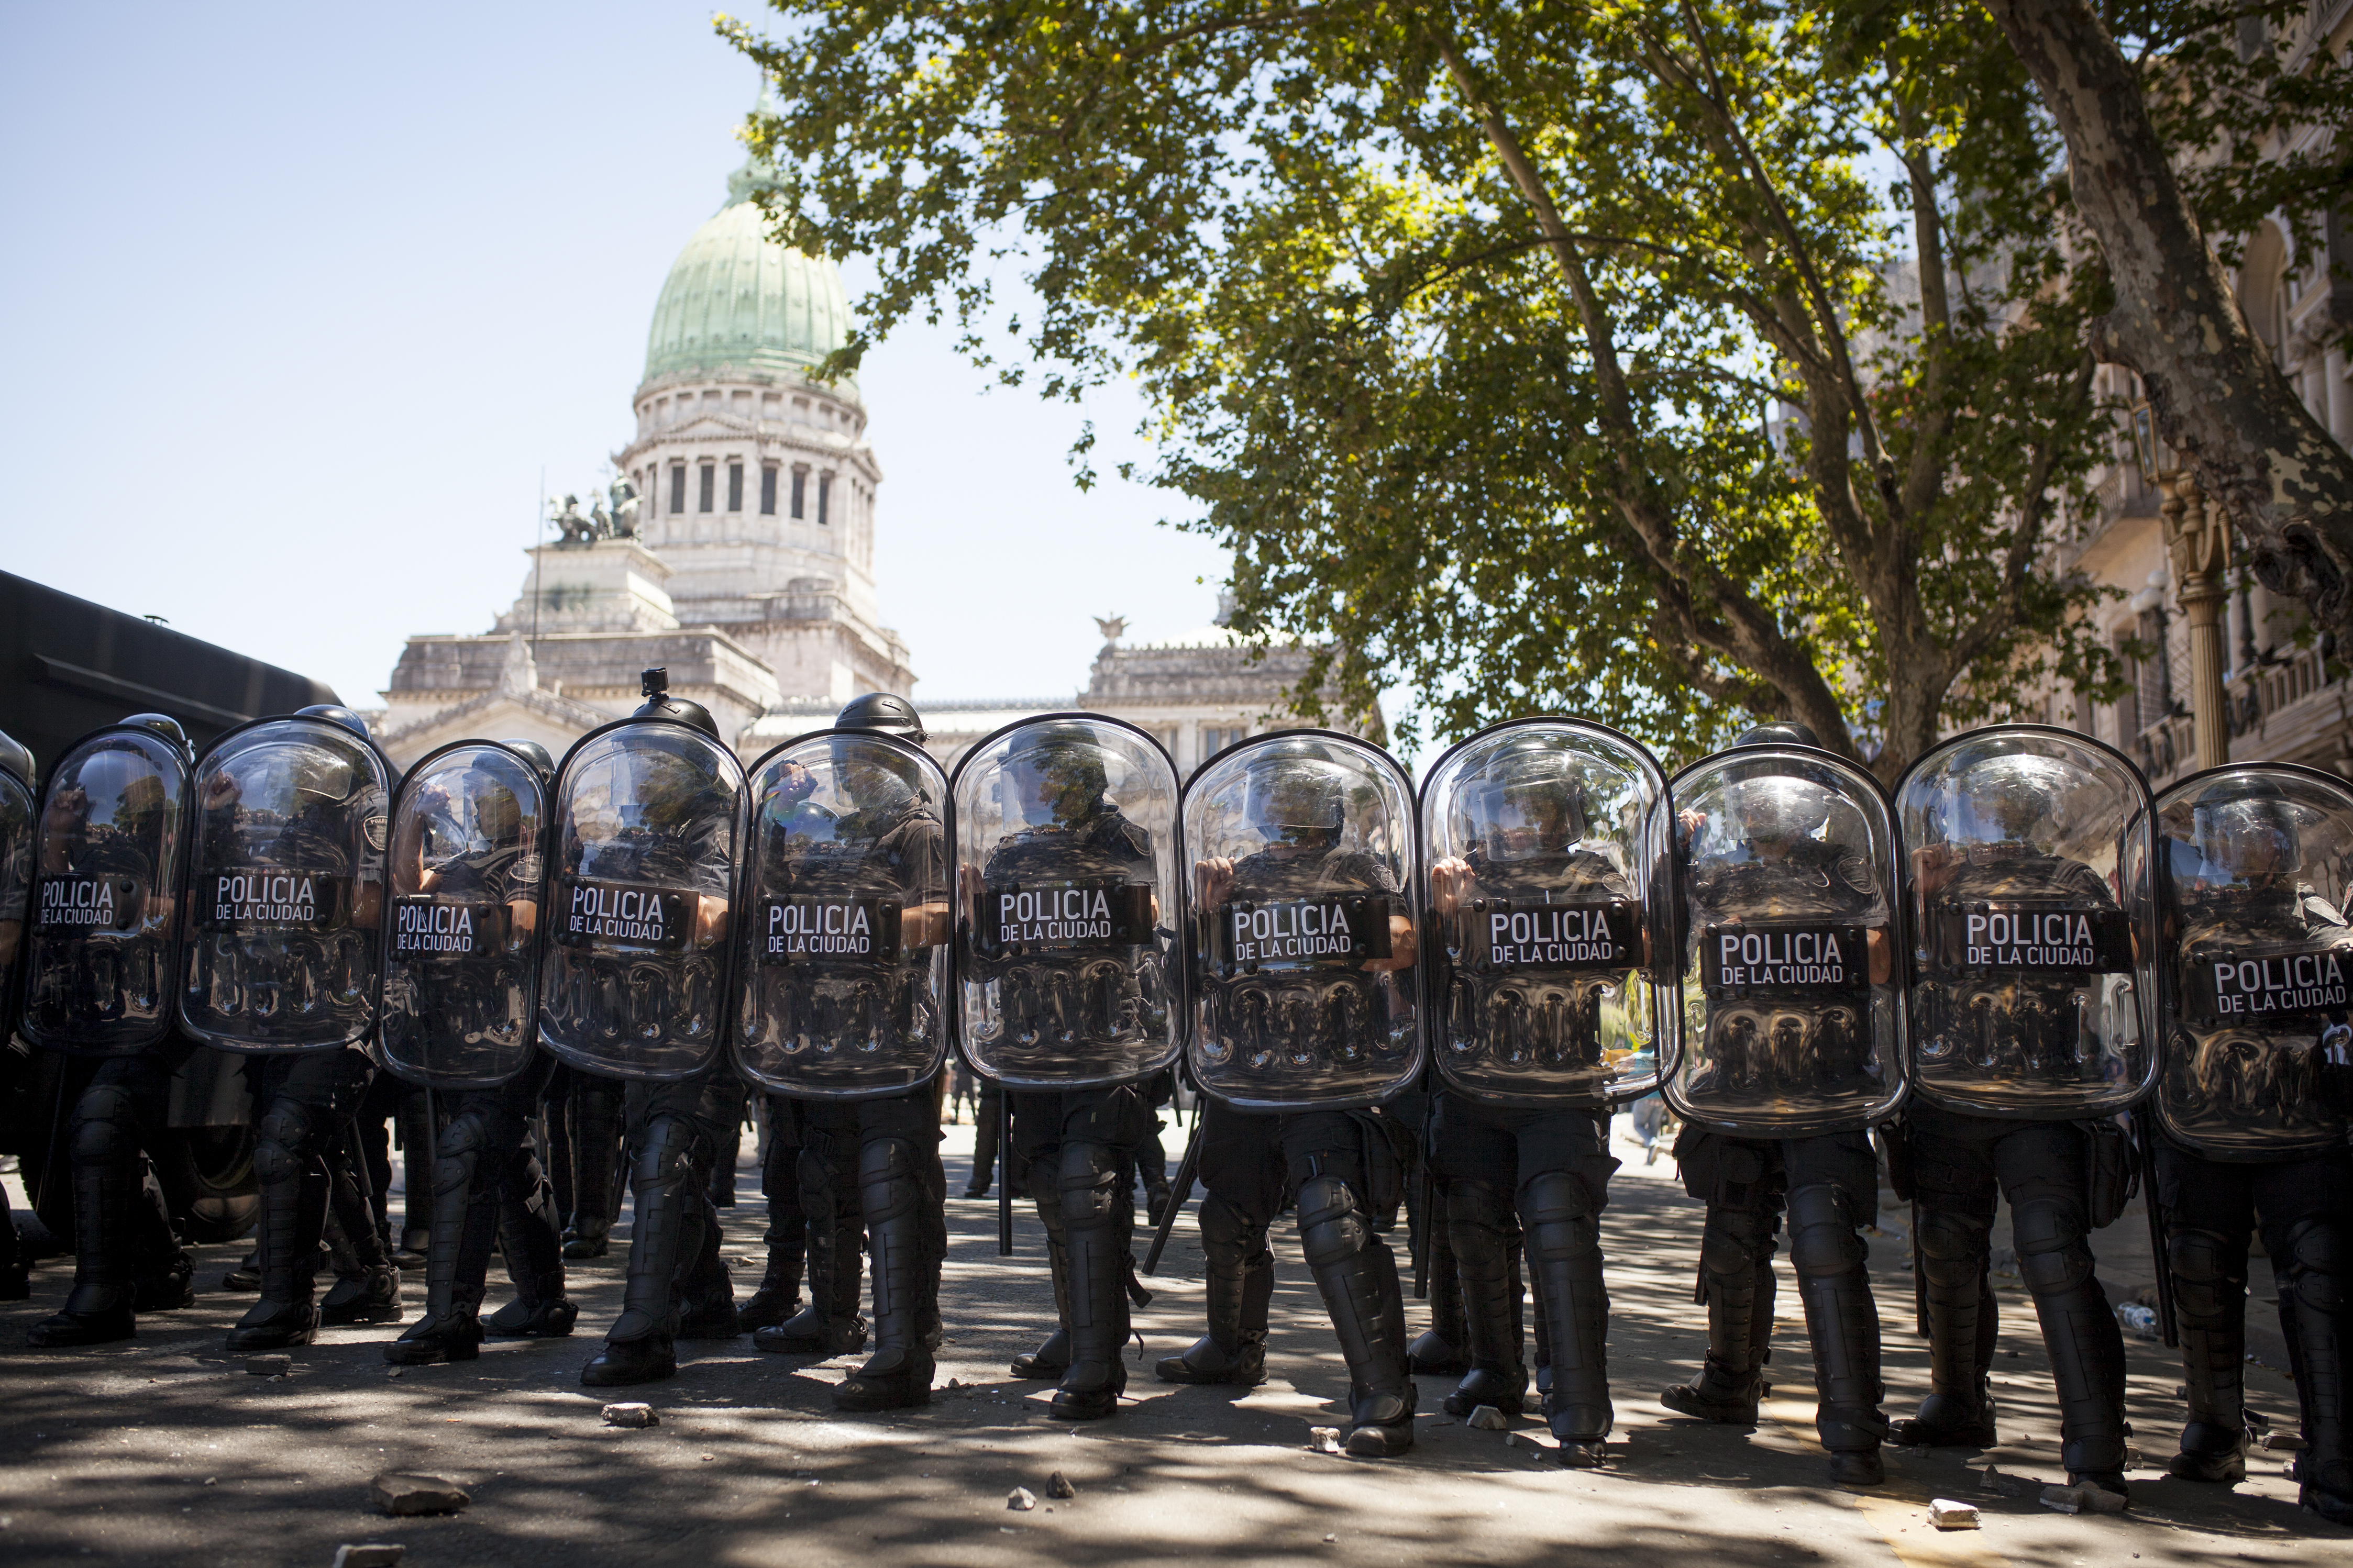 La imagen muestra un cerco policial con escudos y, en el fondo, el Congreso de la Nación.